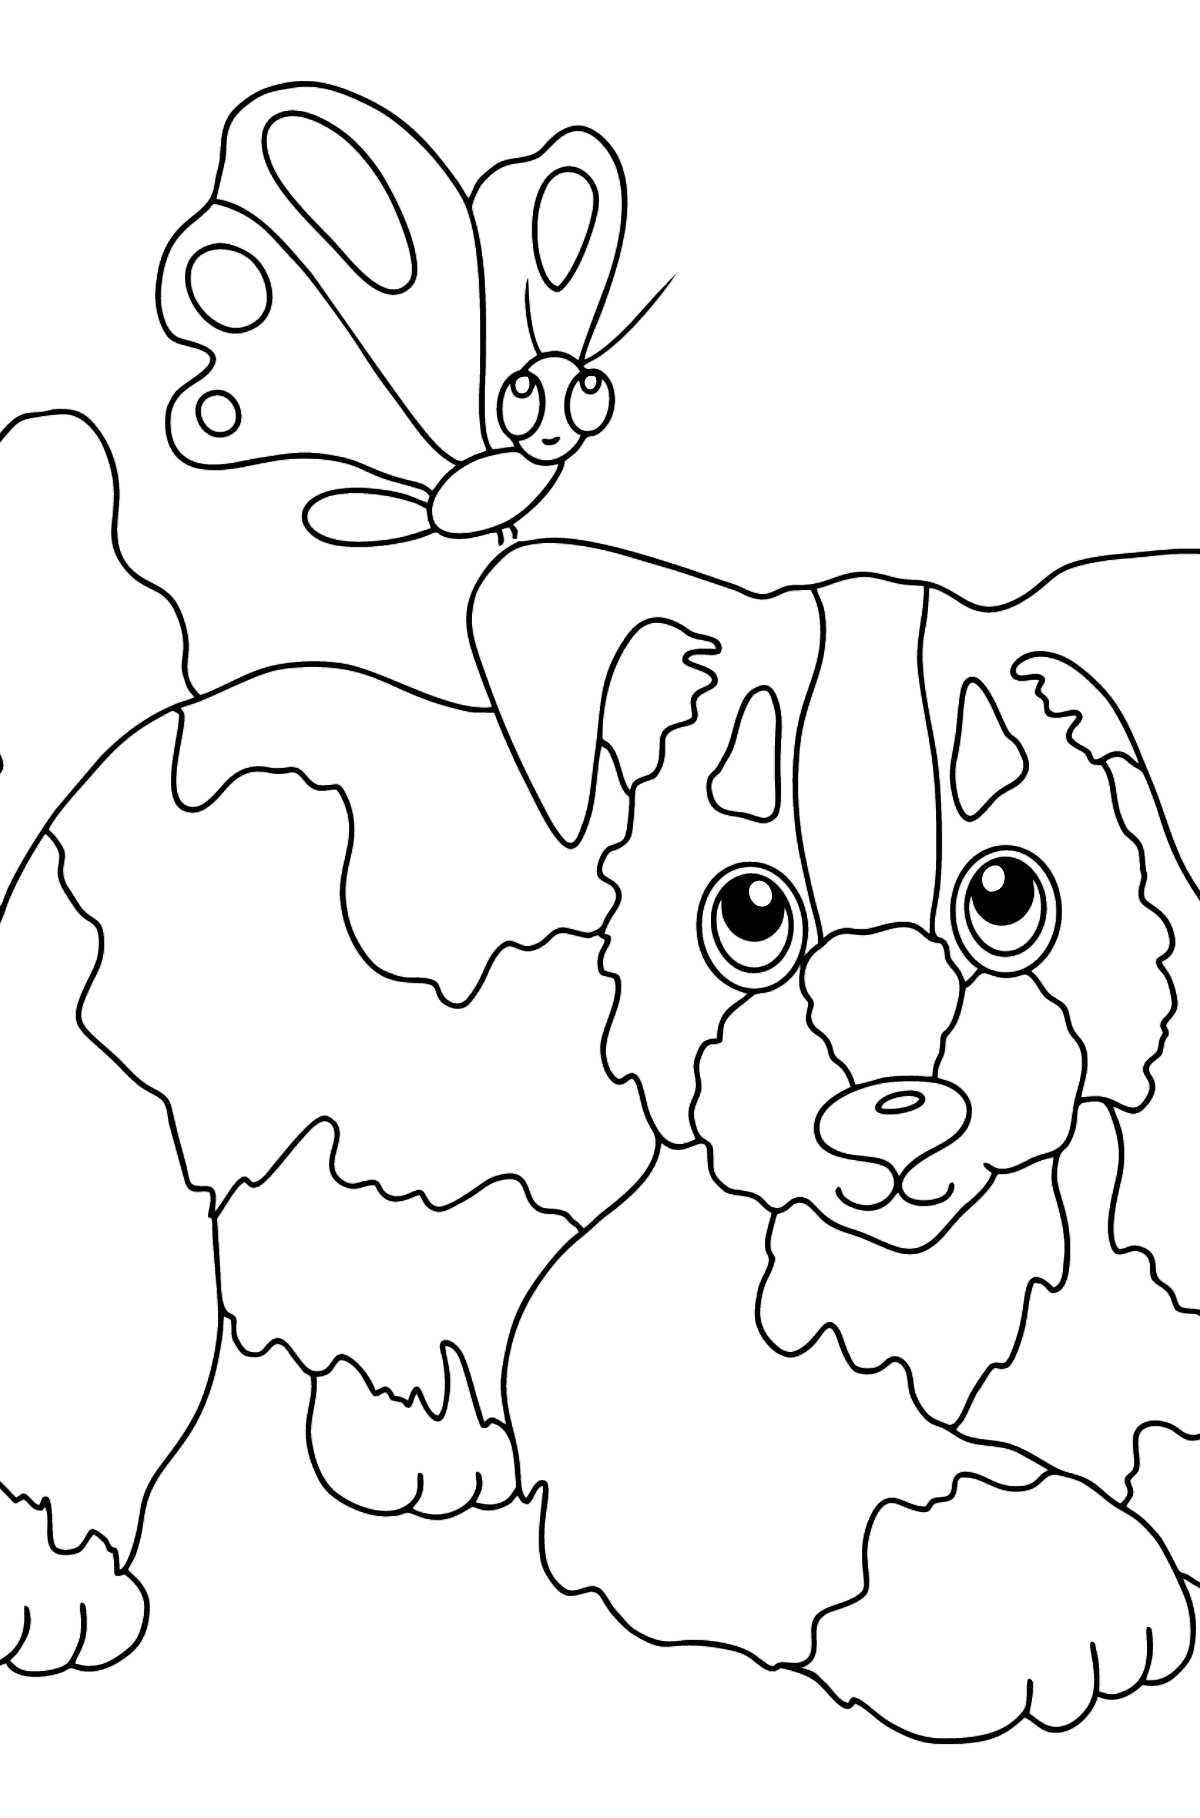 Värityskuva koira ja perhonen (helppo) - Värityskuvat lapsille